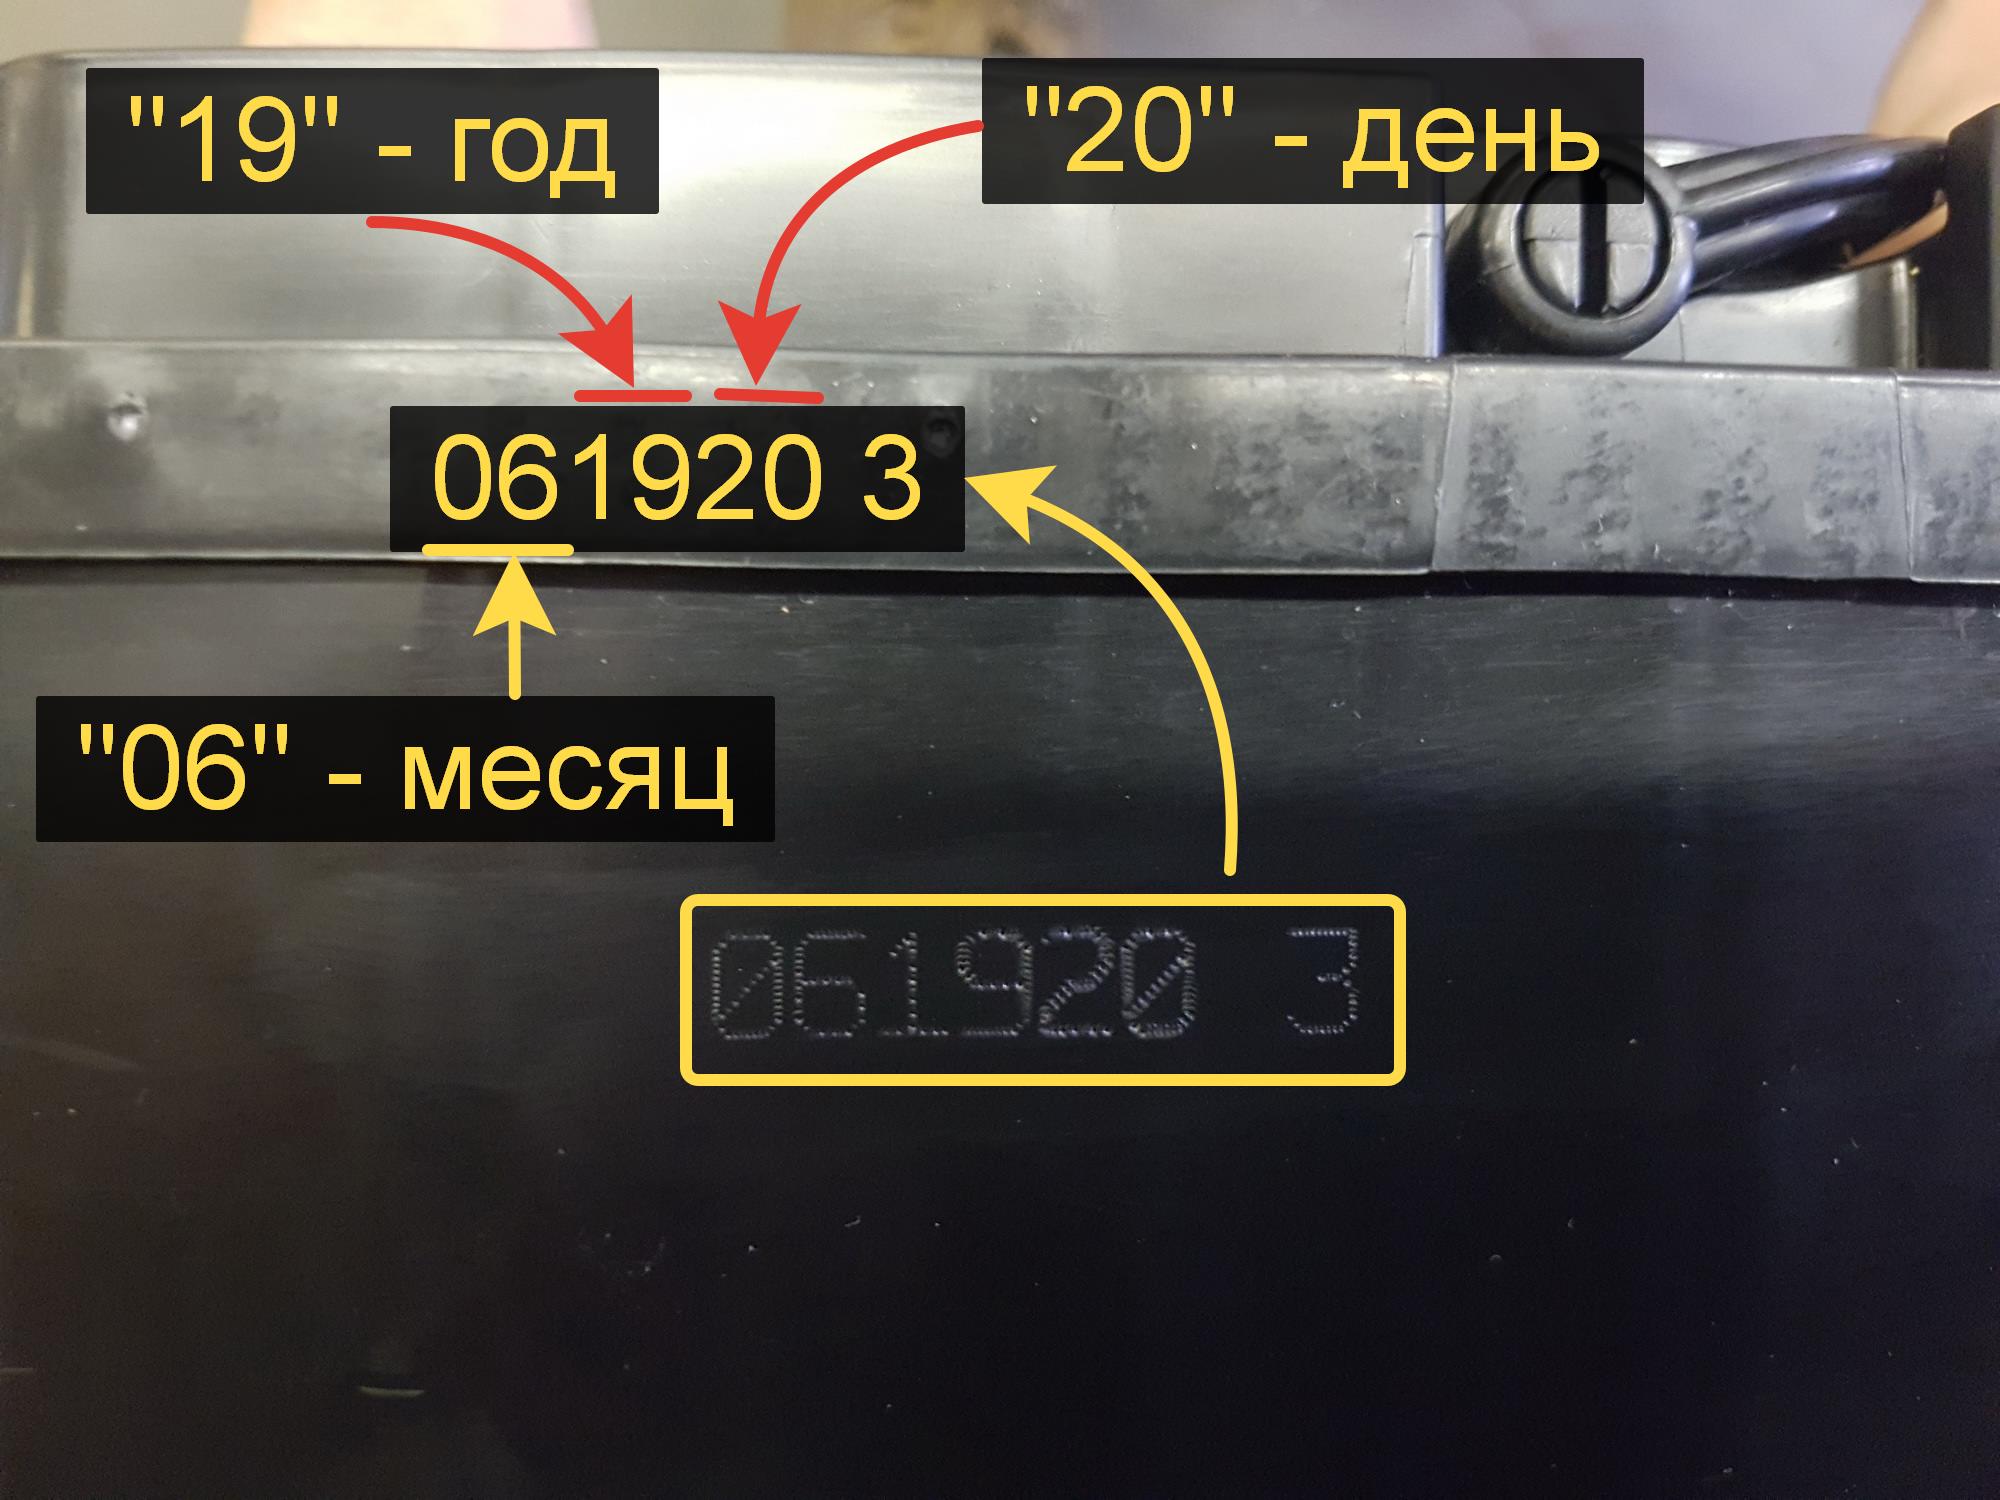 Как определить точную дату изготовления аккумулятора по маркировке на крышке